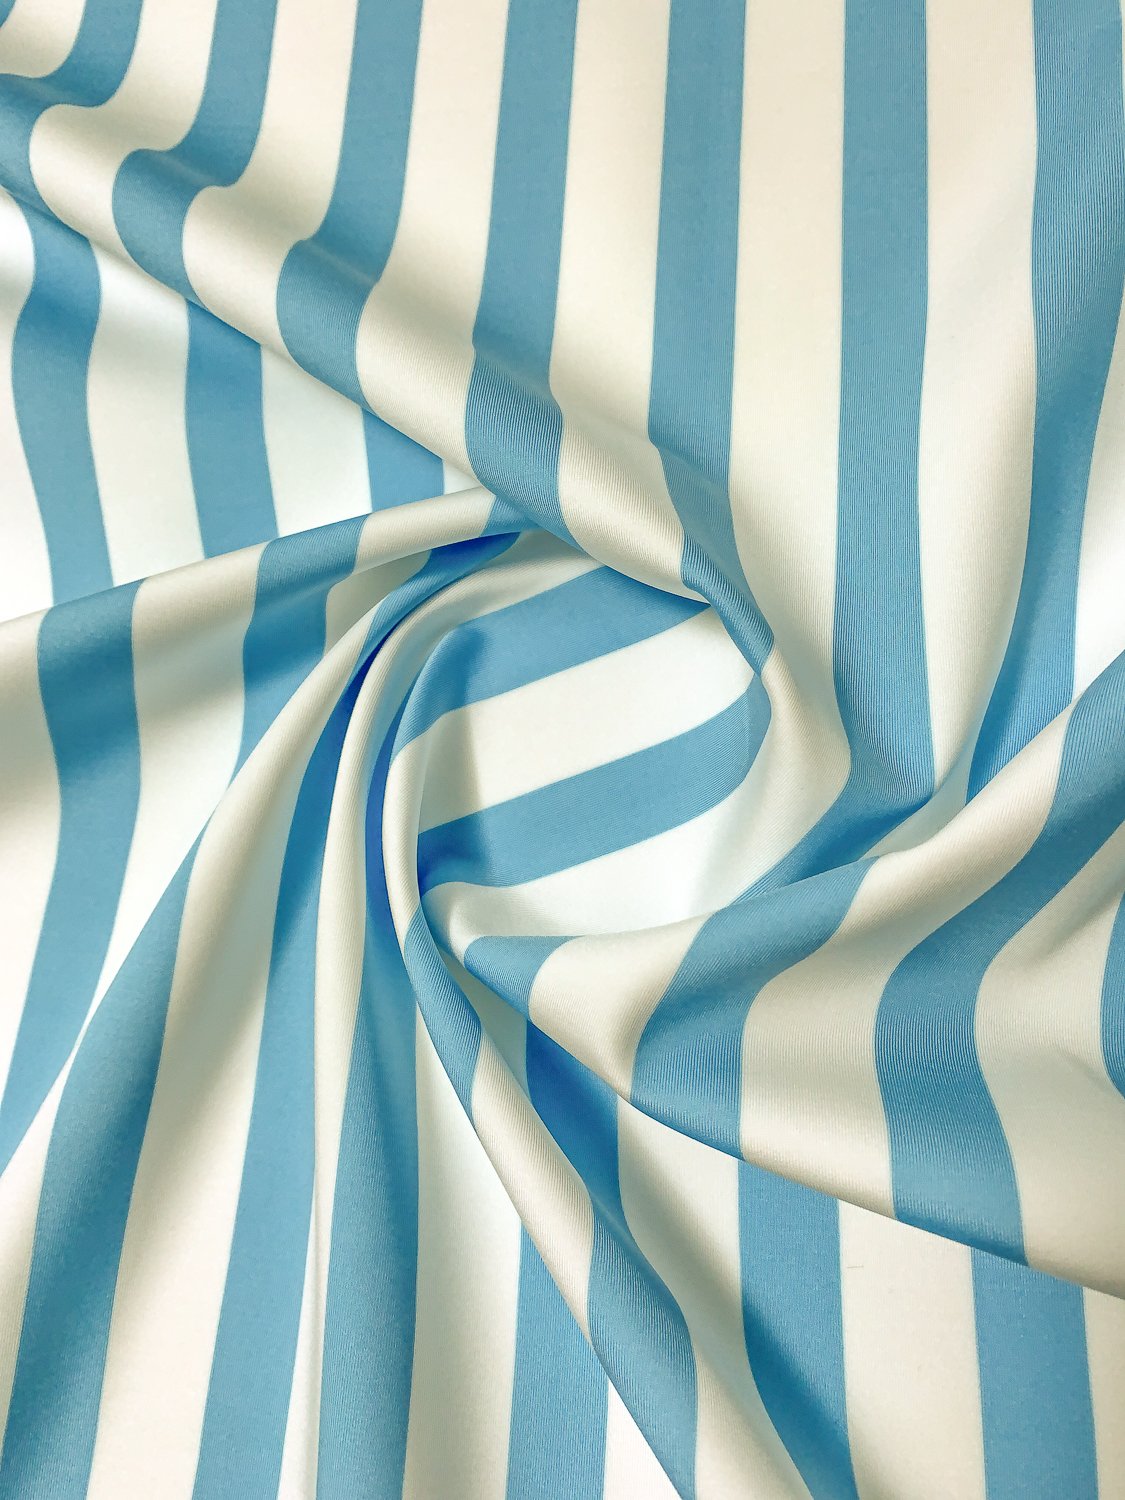 Vertical Striped Printed Scuba - Sky Blue / Off-White